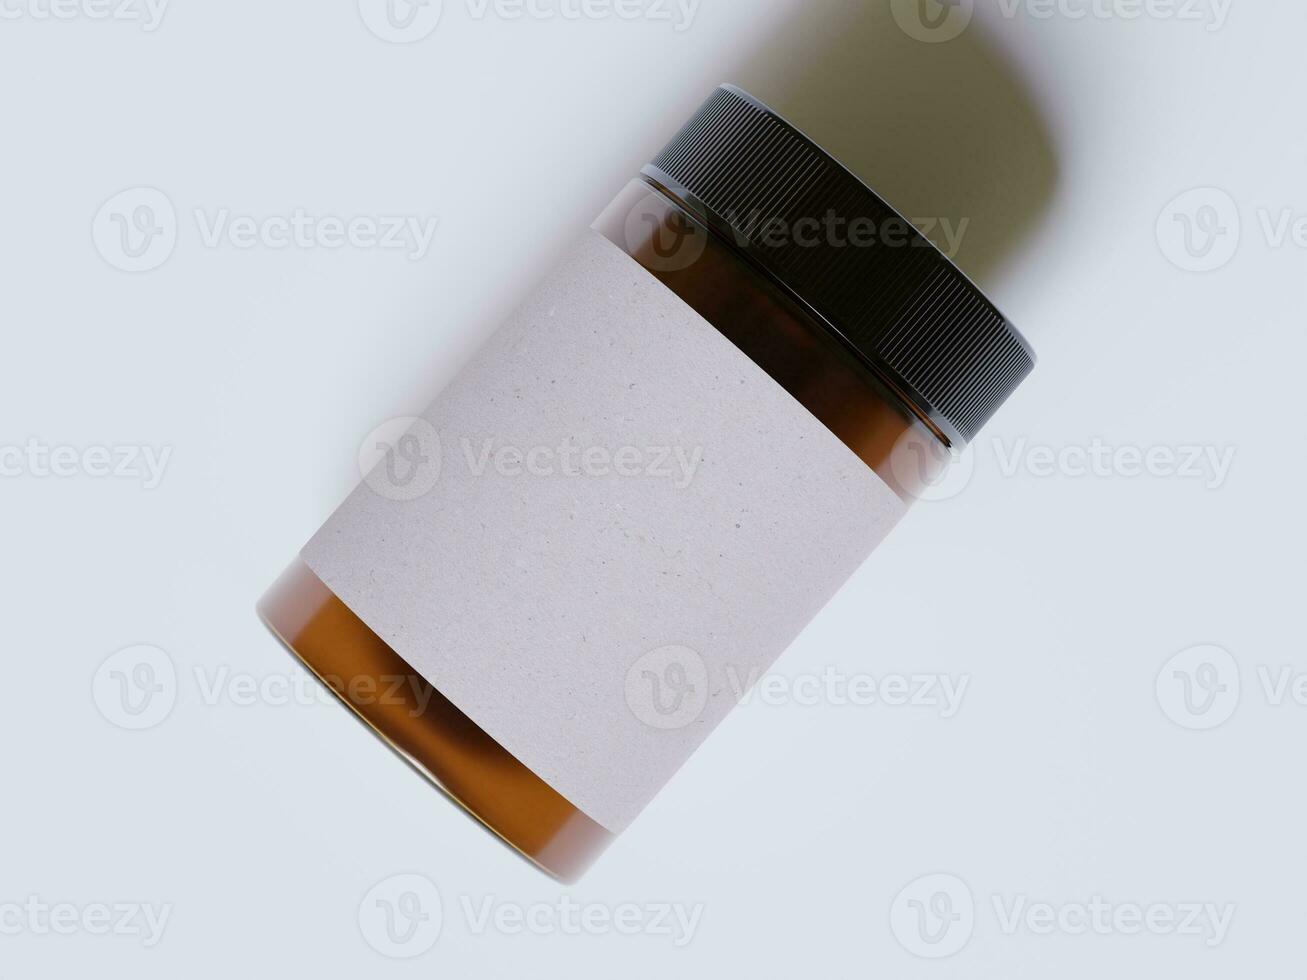 ambra bicchiere cosmetico vaso con un' realistico struttura vuoto etichetta bianca colore interpretazione 3d foto